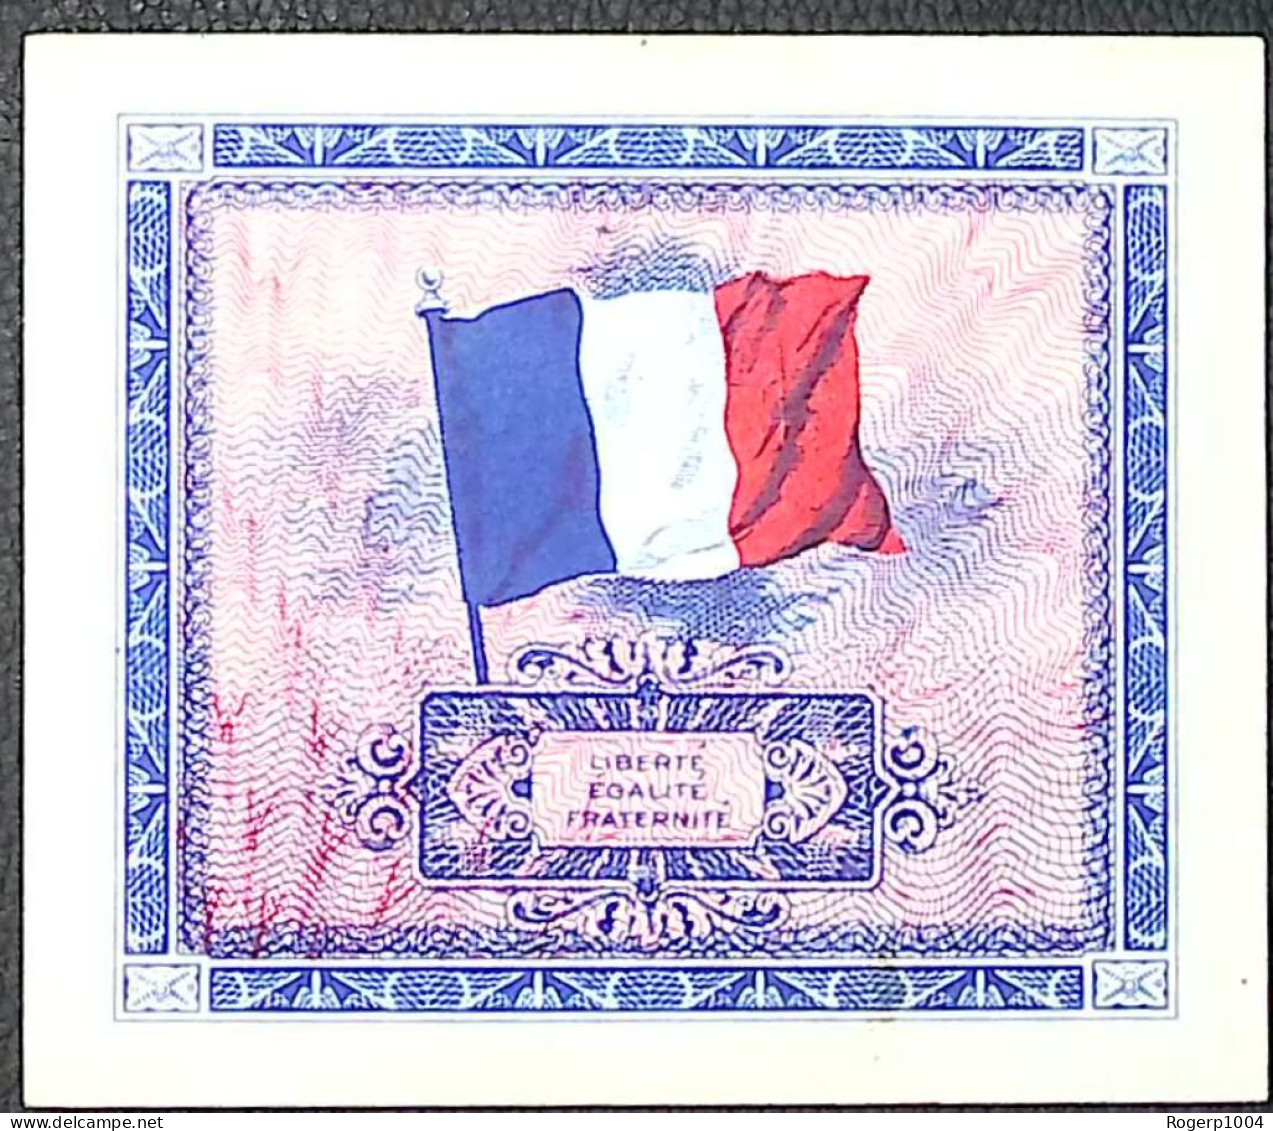 FRANCE * Billets Du Trésor * 5 Francs Drapeau * 1944 * Sans Série * Etat/Grade SUP+/XXF - 1944 Drapeau/Francia